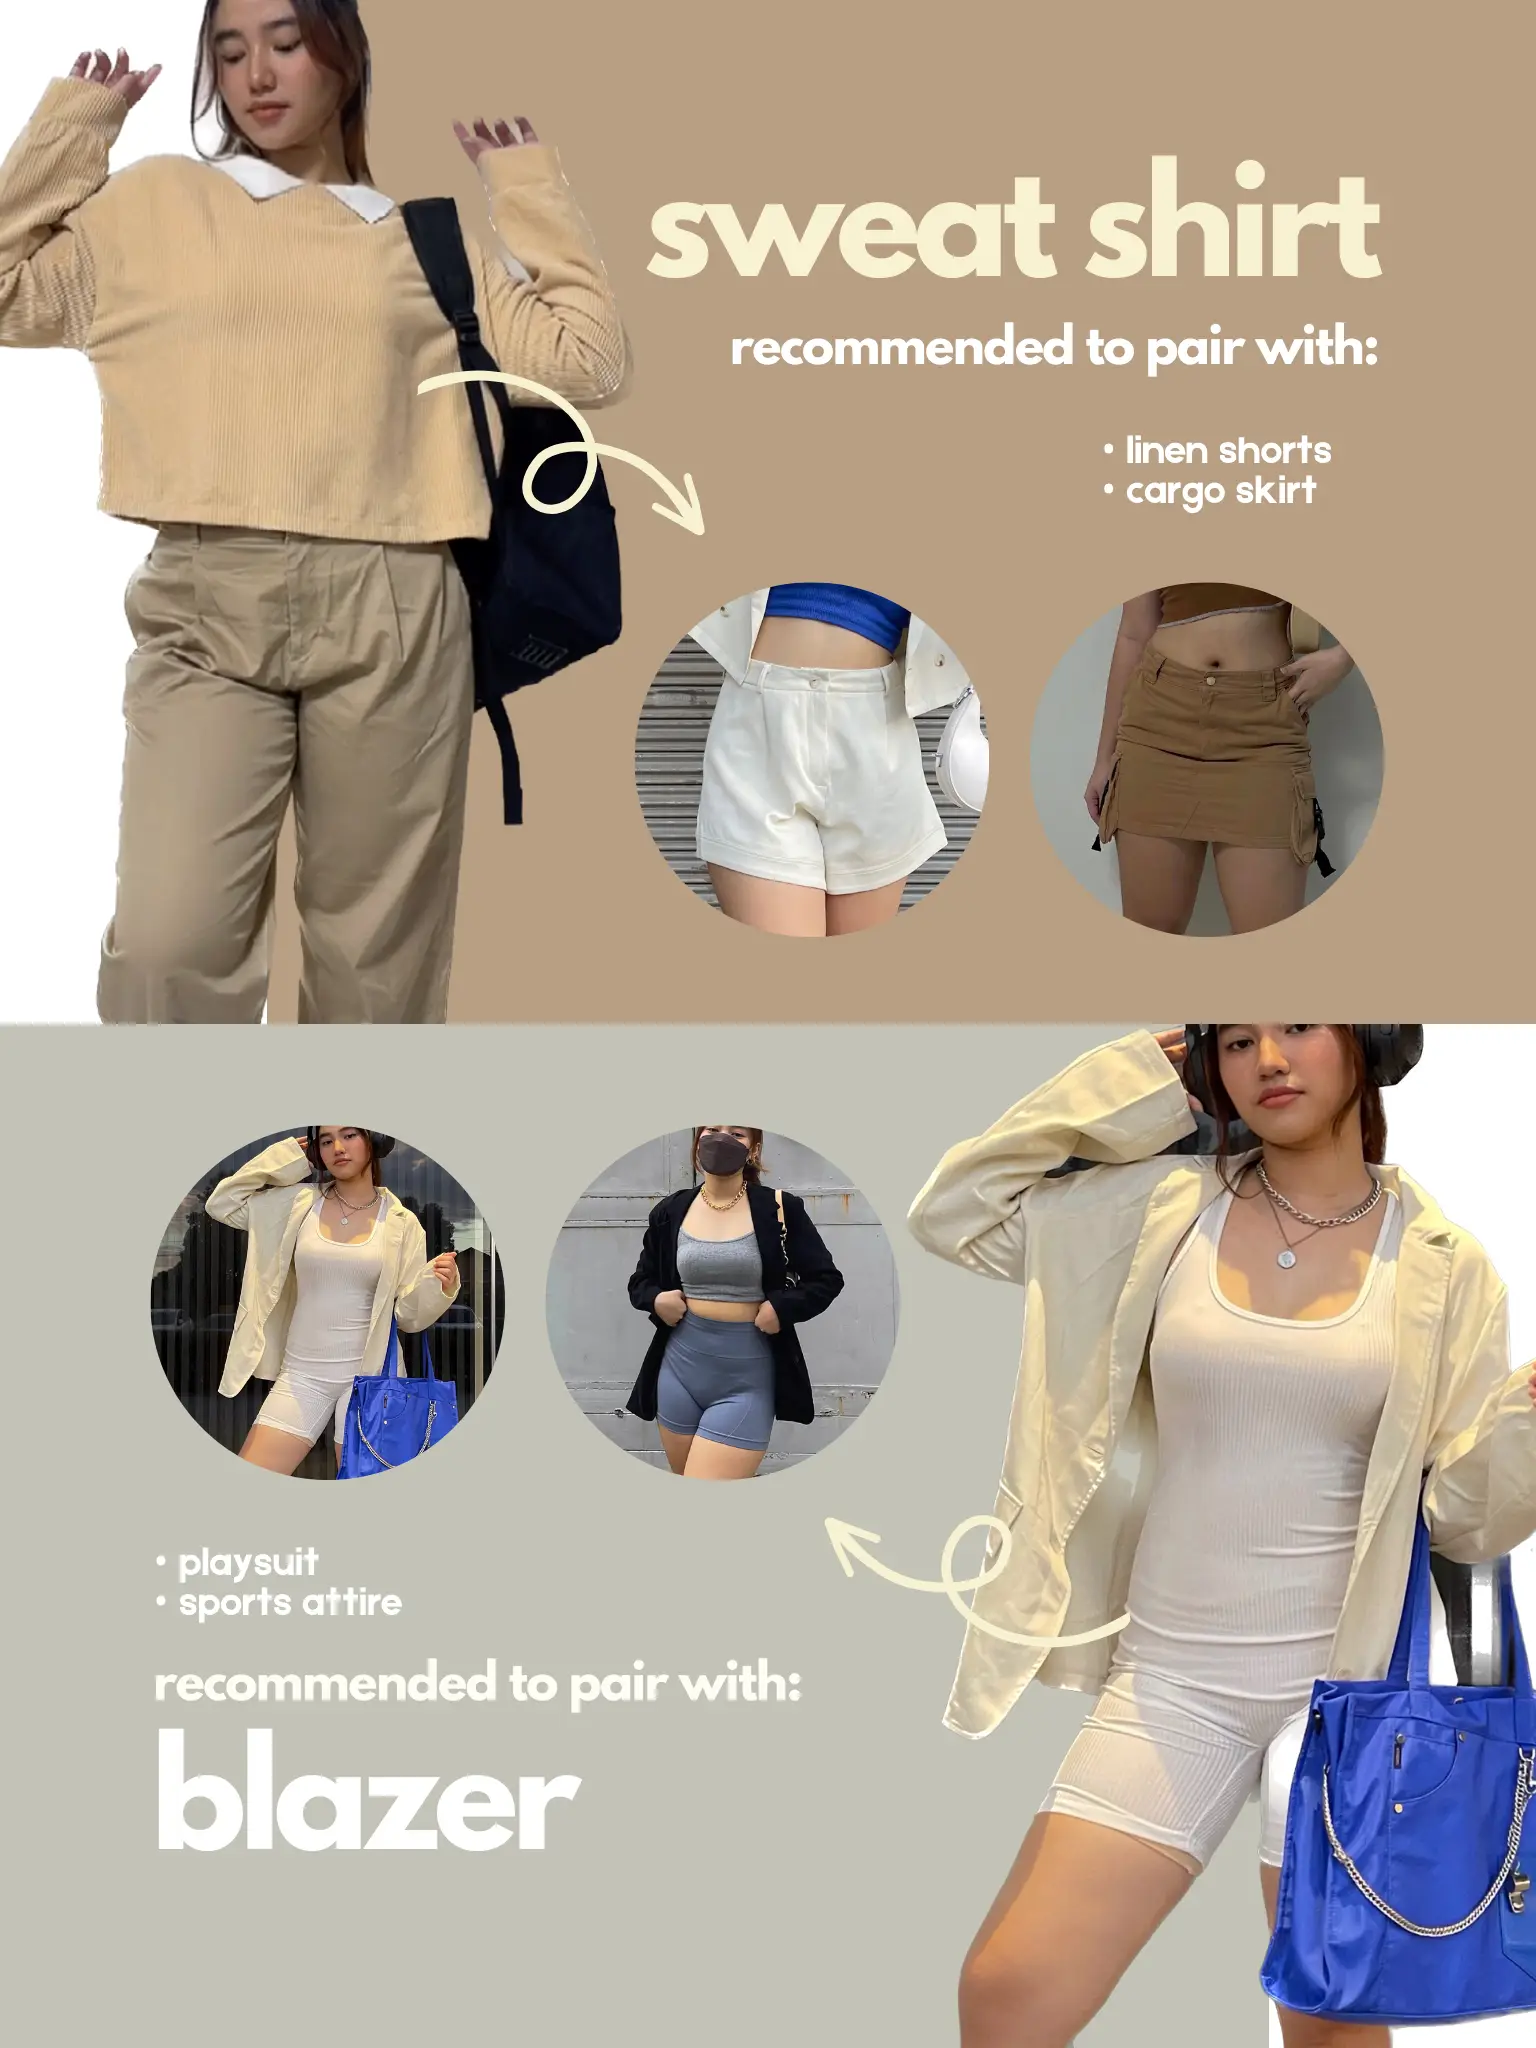 Top 6 Wardrobe Essentials — Don't Skip These!